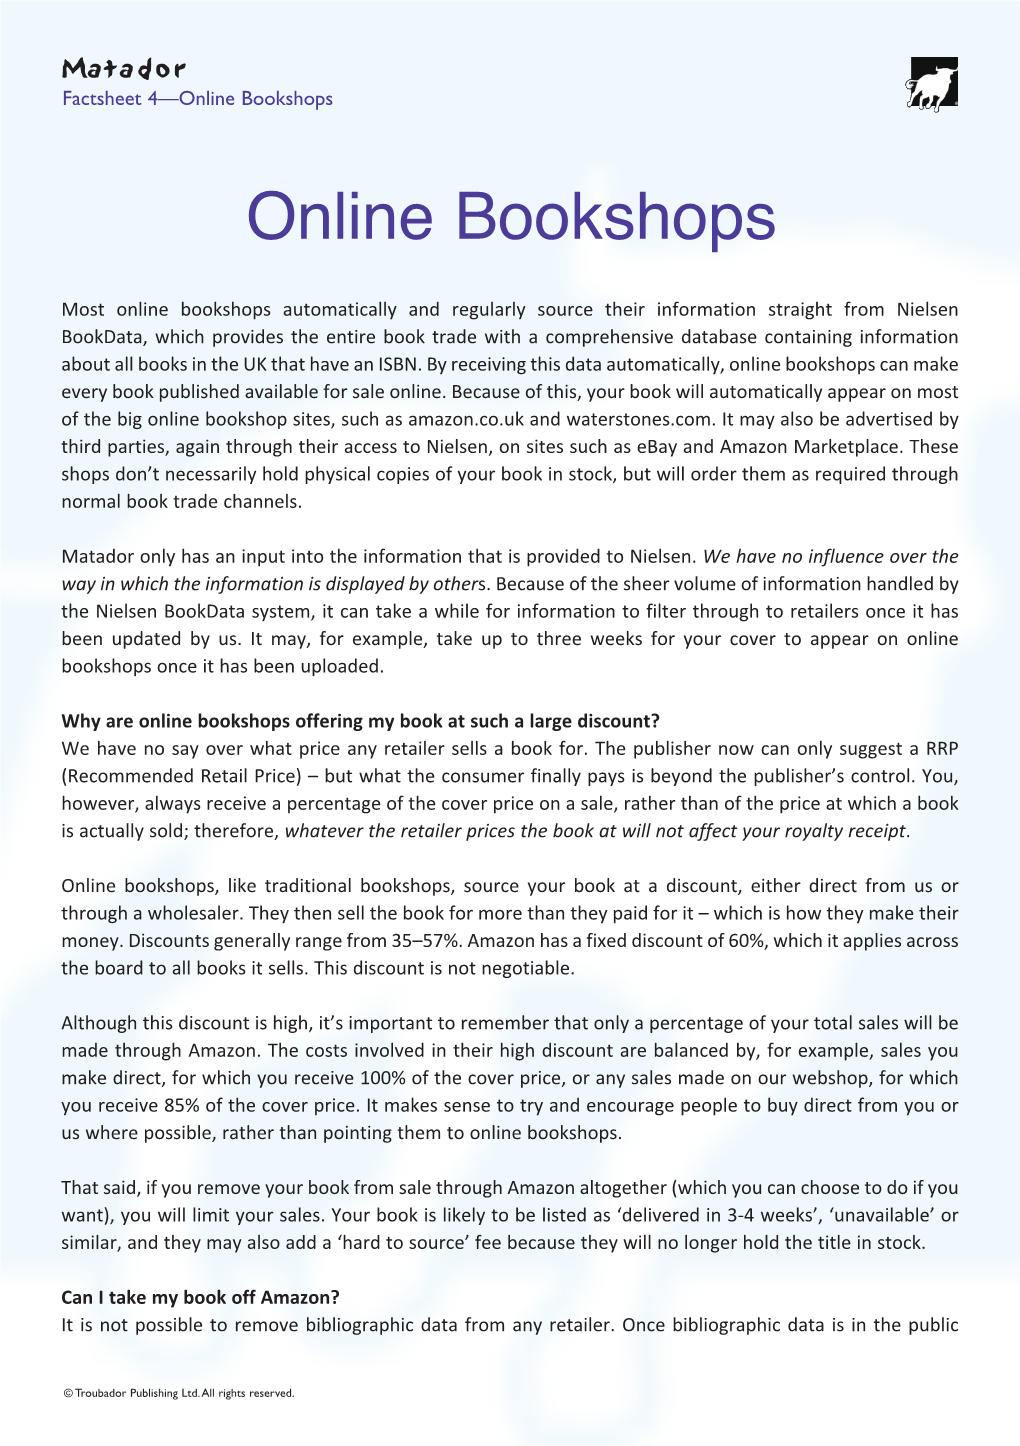 Online Bookshops.Qxp Layout 1 05/12/2019 15:55 Page 1